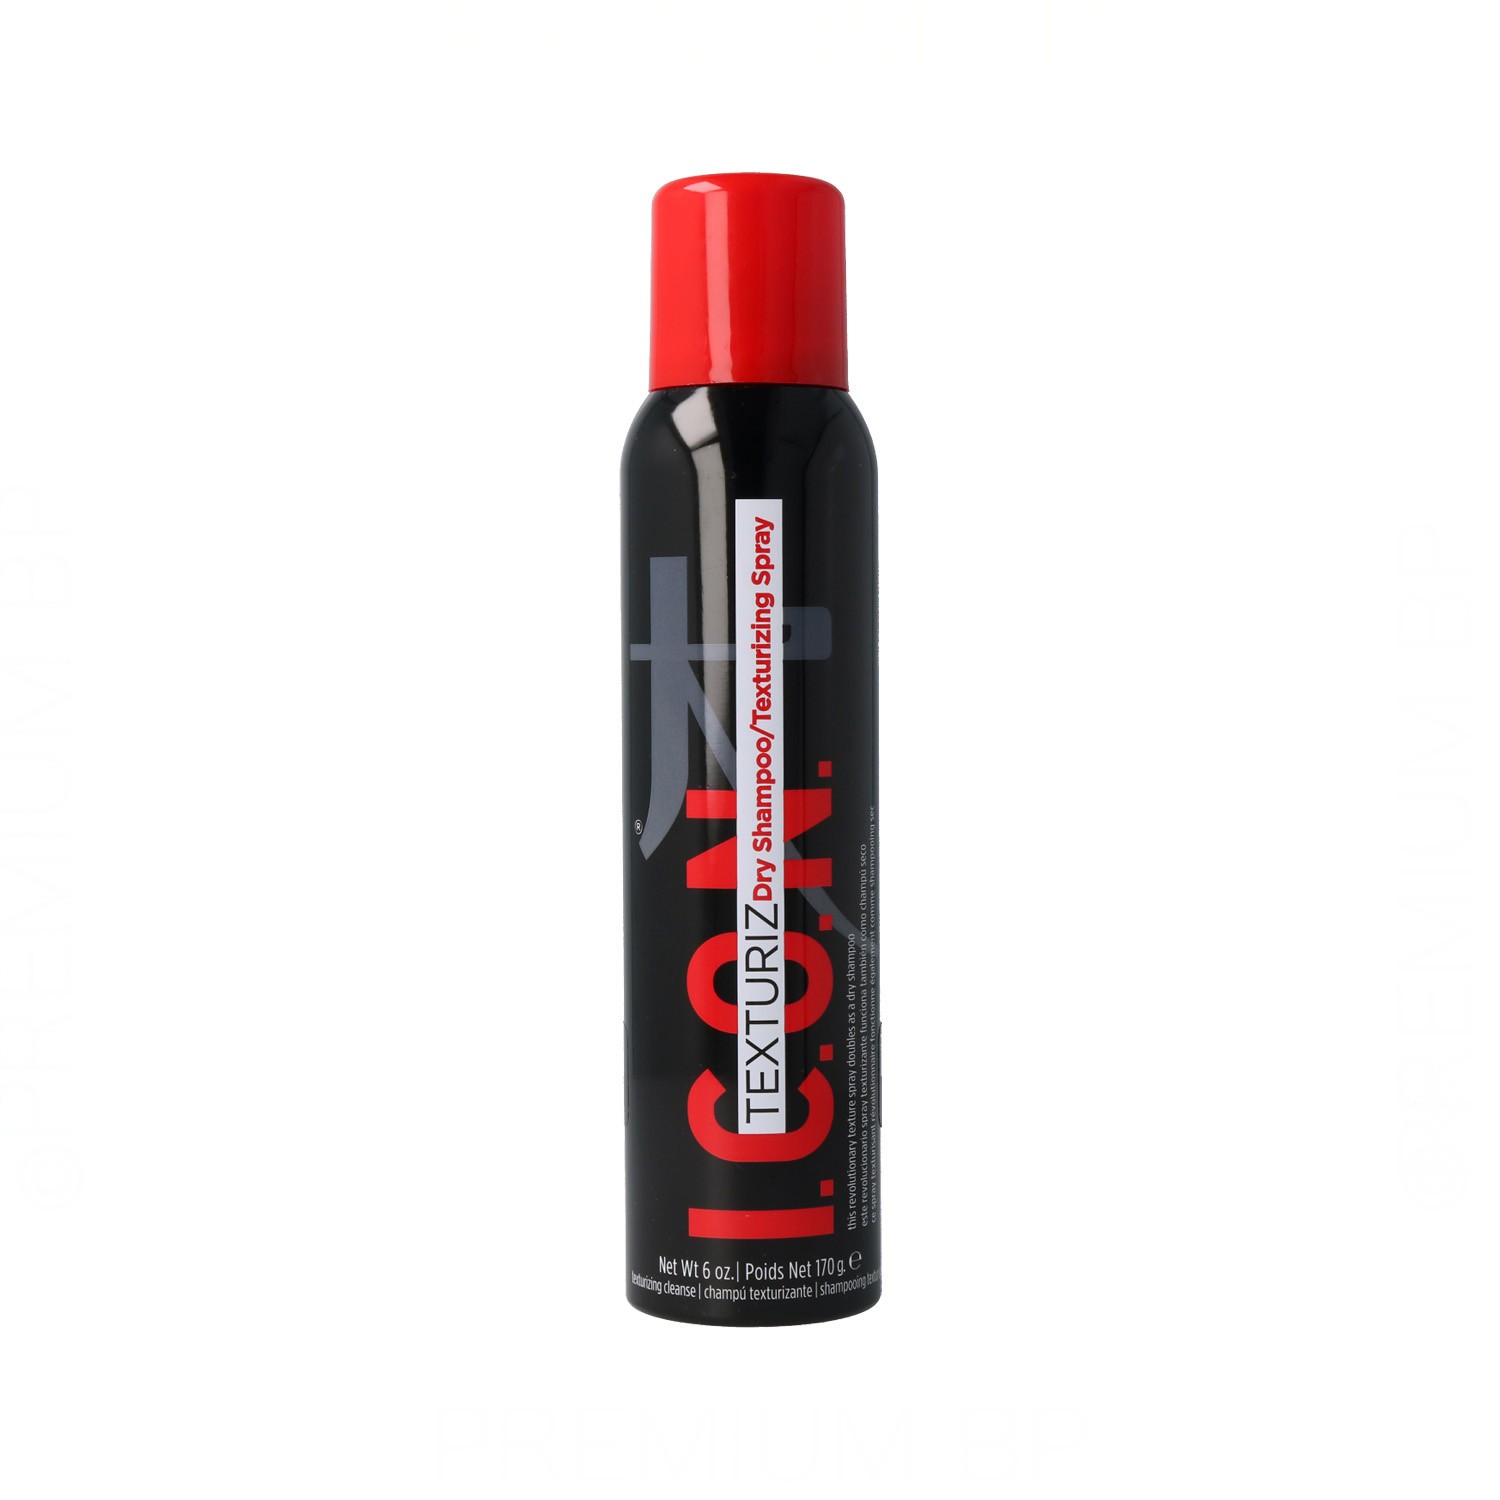 Icon Texturiz Dry Xampú/Texturizer Spray 170G